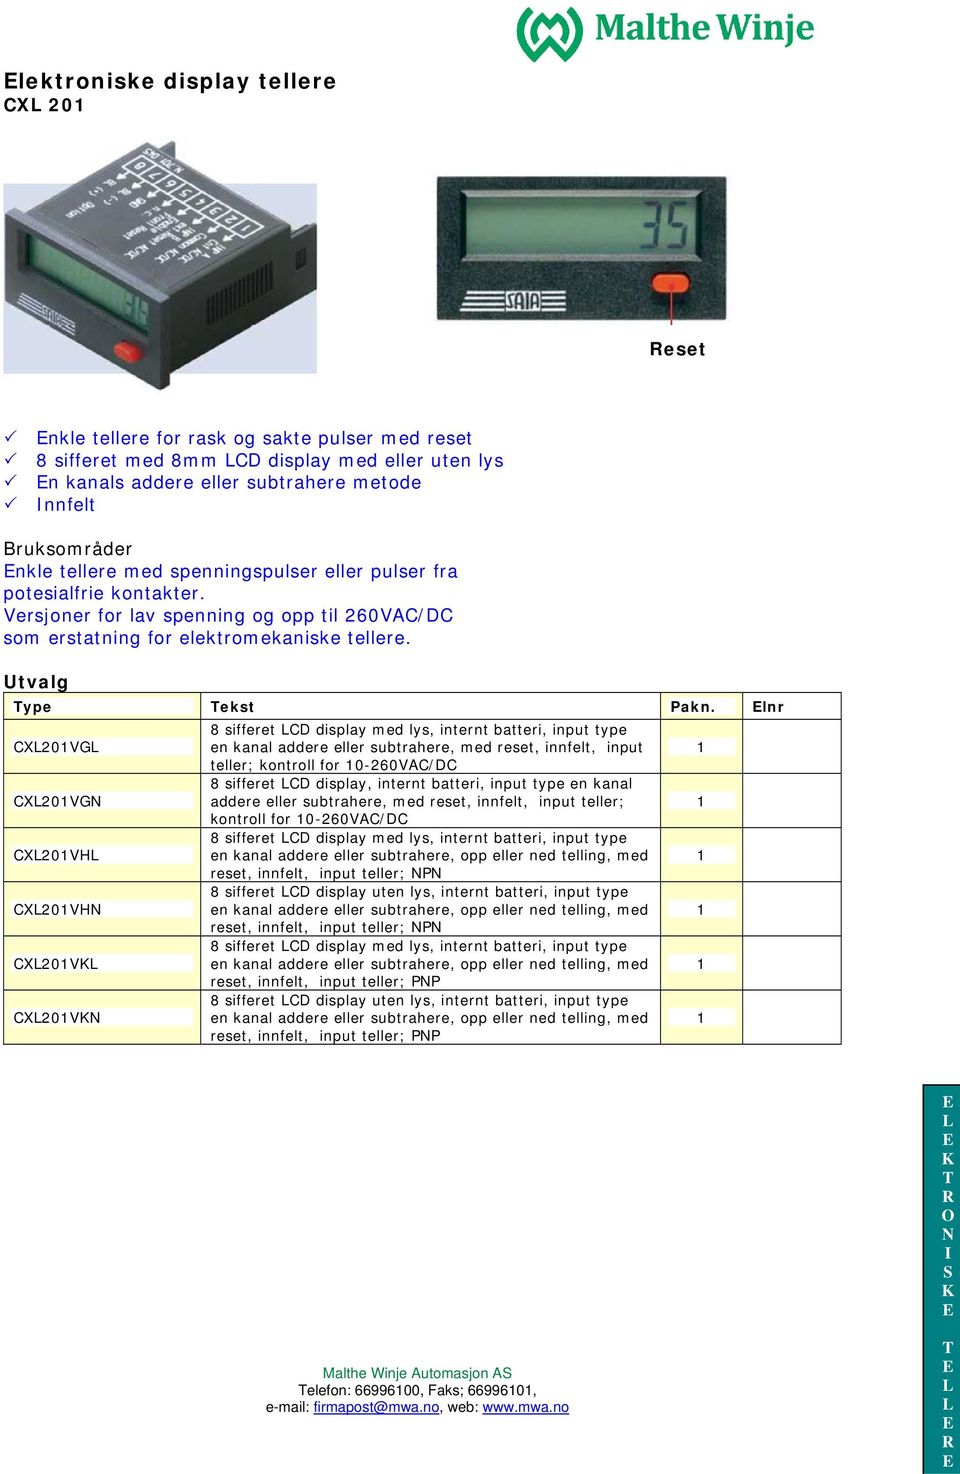 lnr CX20VG 8 sifferet CD display med lys, internt batteri, input type en kanal addere eller subtrahere, med reset, innfelt, input teller; kontroll for 0-260VAC/DC CX20VG 8 sifferet CD display,